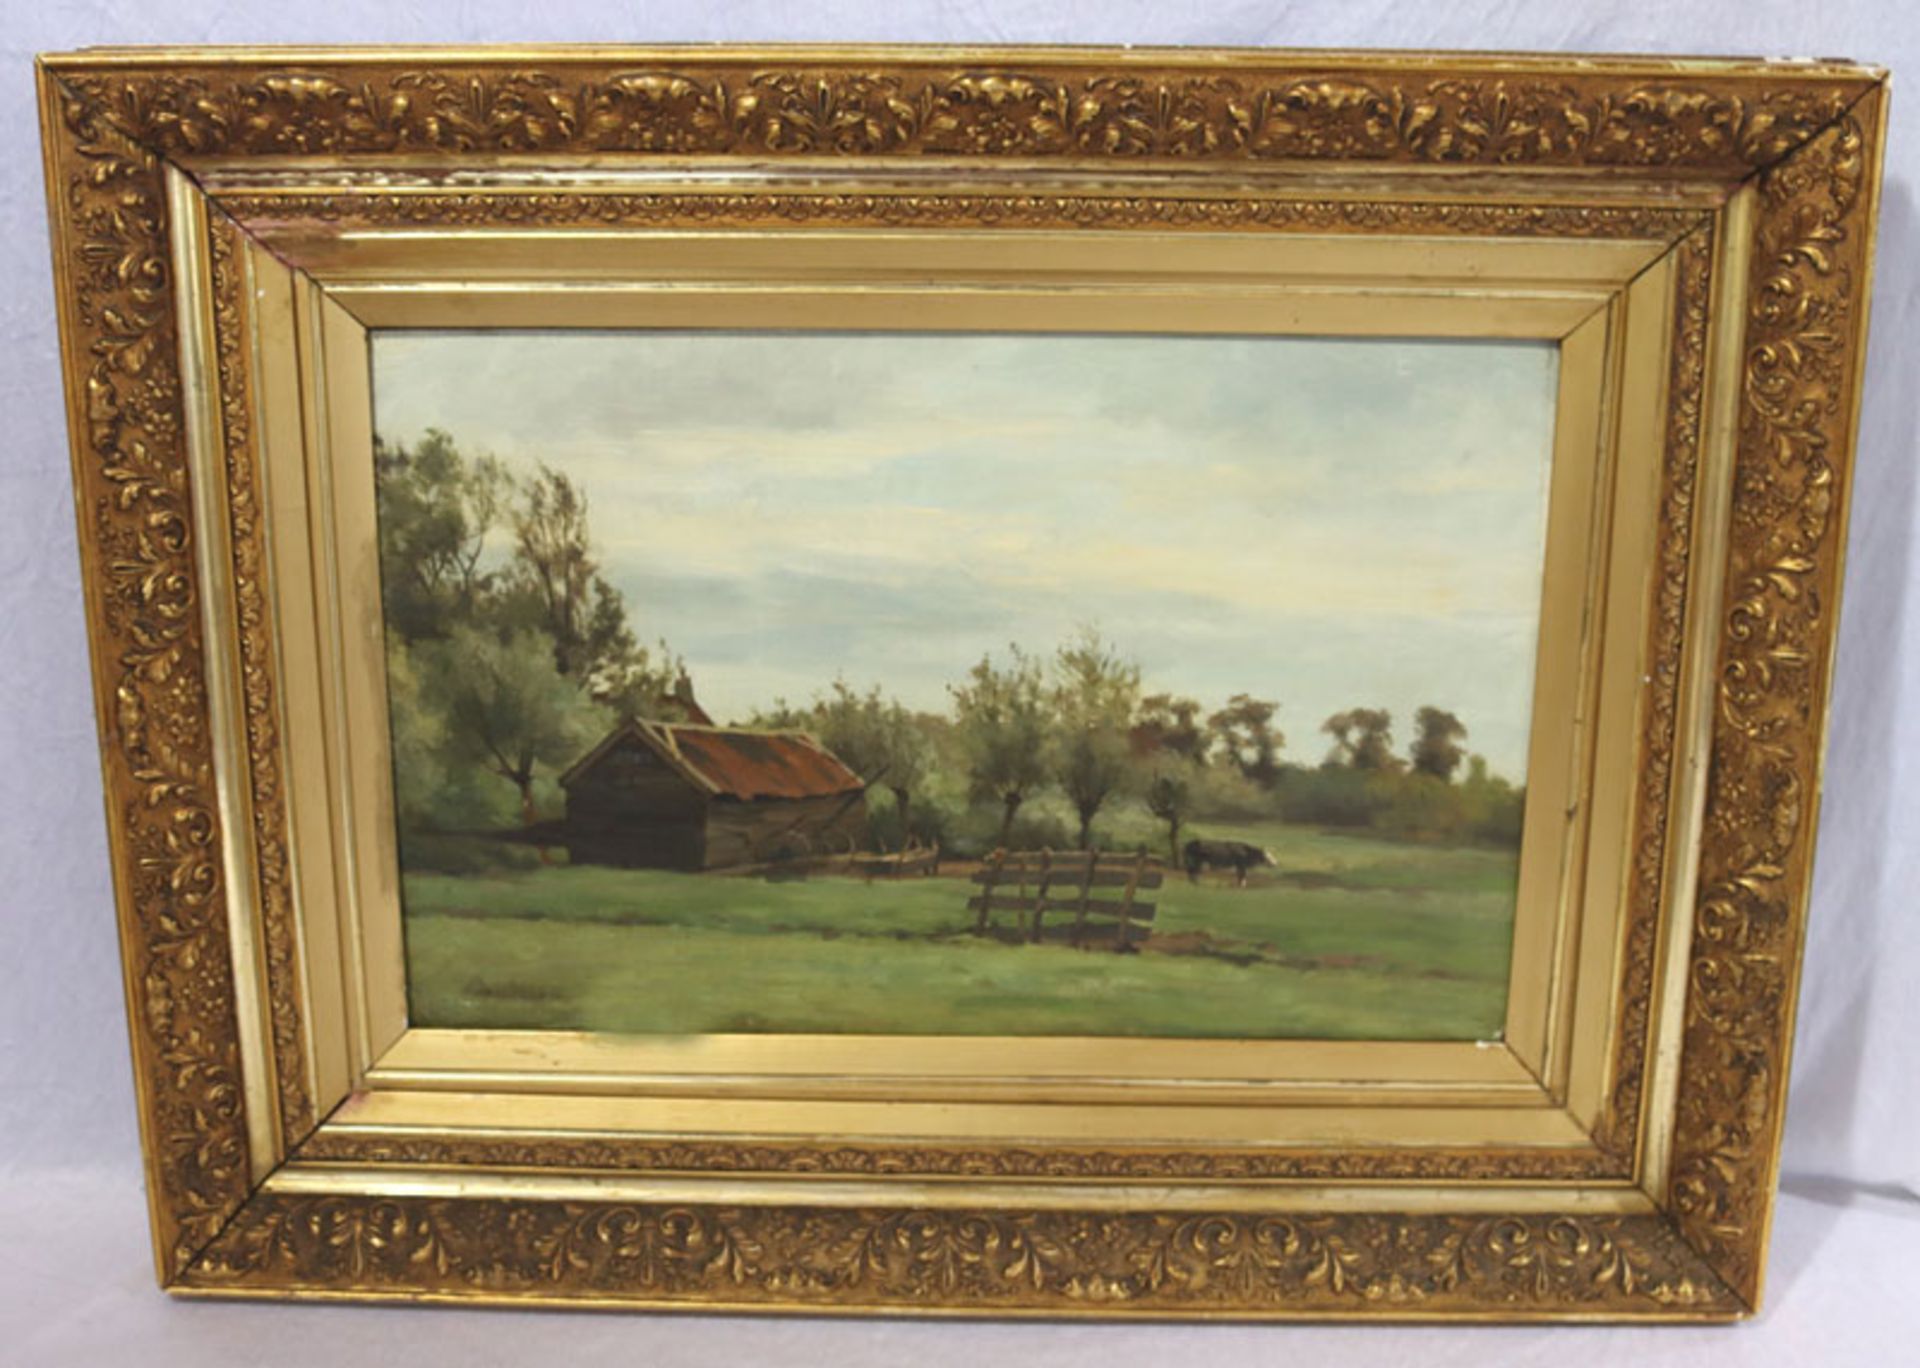 Gemälde ÖL/Holz 'Landschafts-Szenerie mit Kuh', undeutlich signiert Daubigny ?, gerahmt, Rahmen